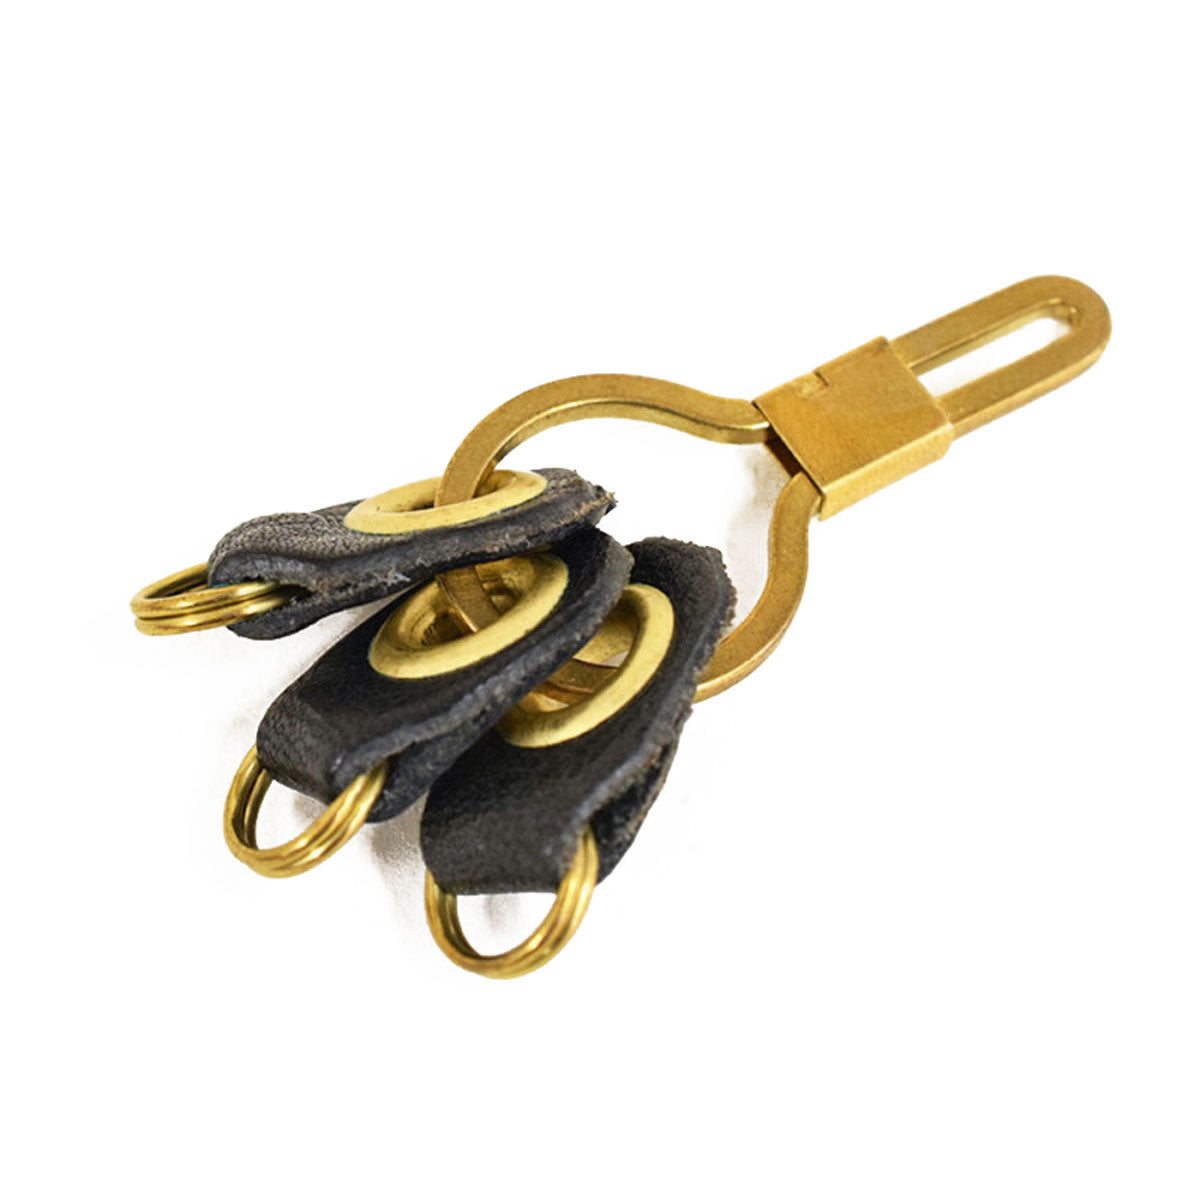 黄铜钥匙皮套 栃木皮革 3个钥匙圈